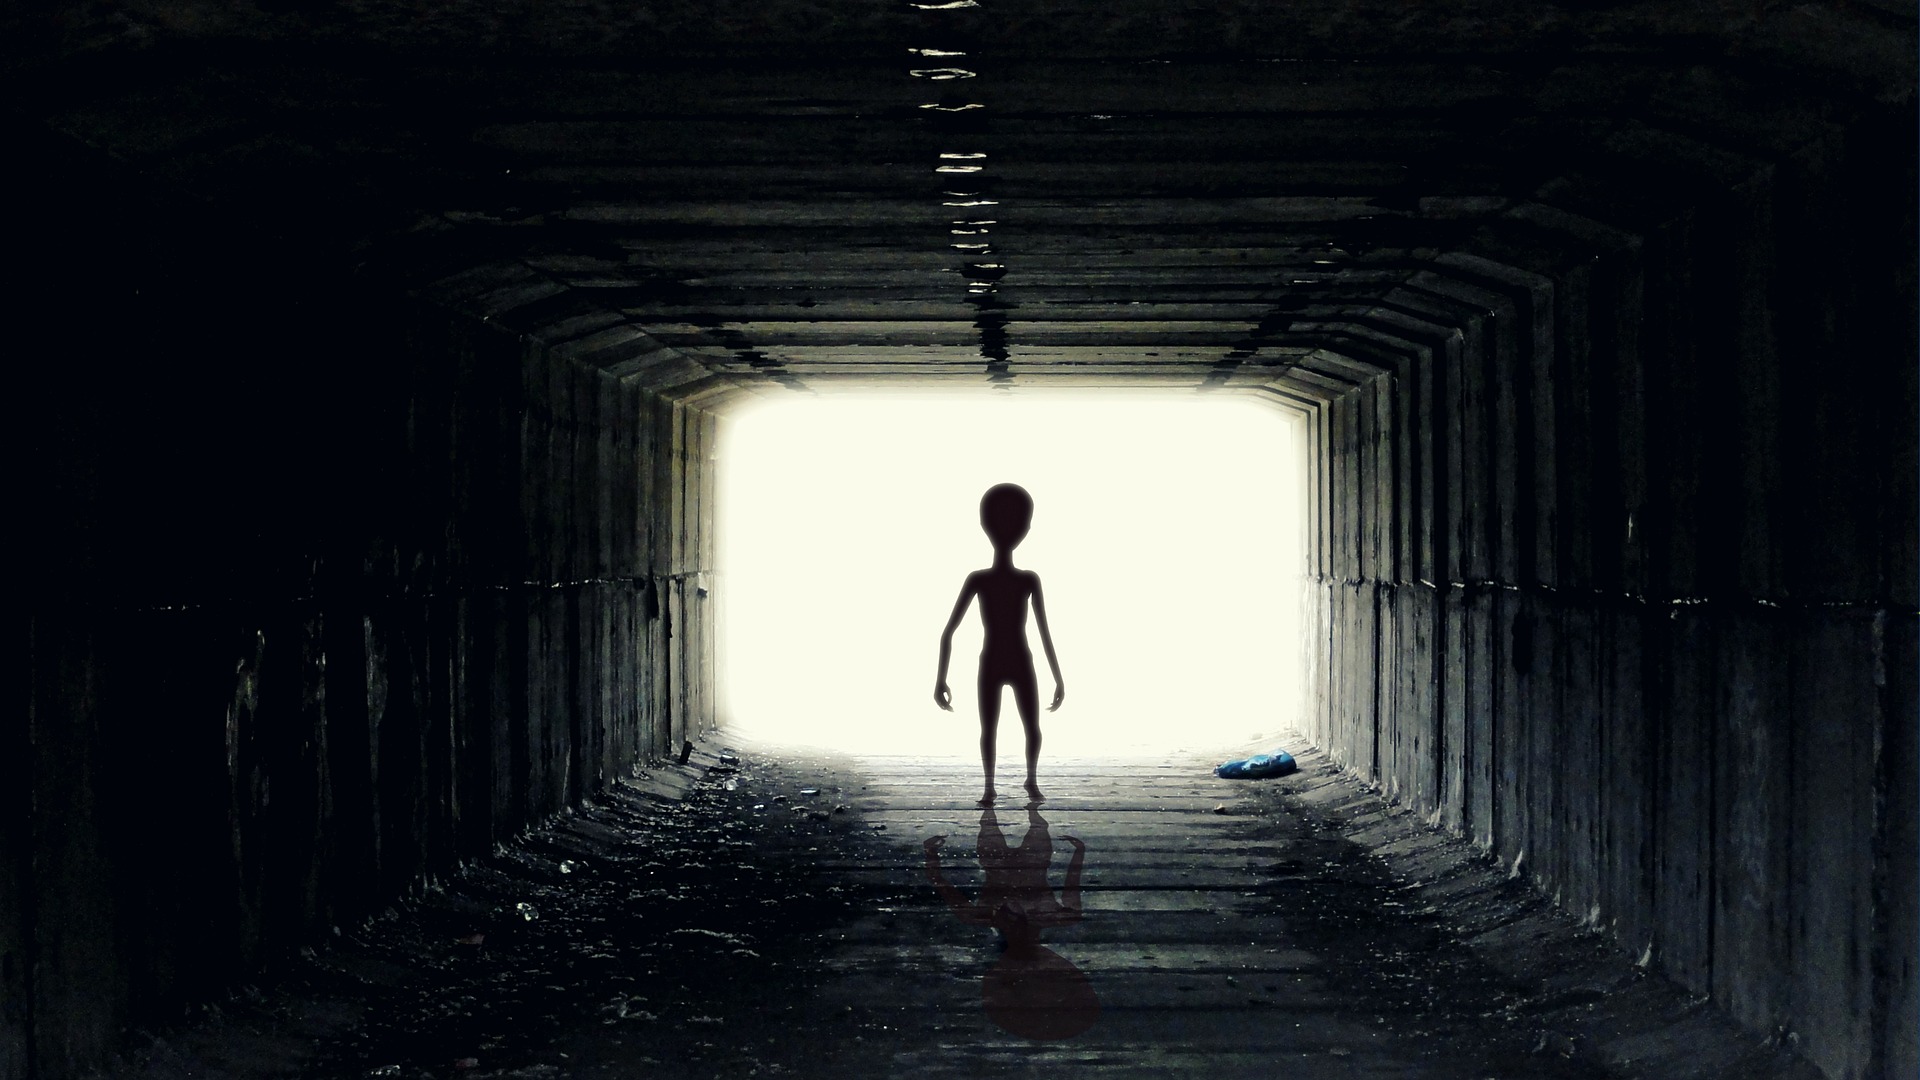 Un fotograma que representa la autopsia de un extraterrestre será subastado. (Foto Prensa Libre: Pixabay)